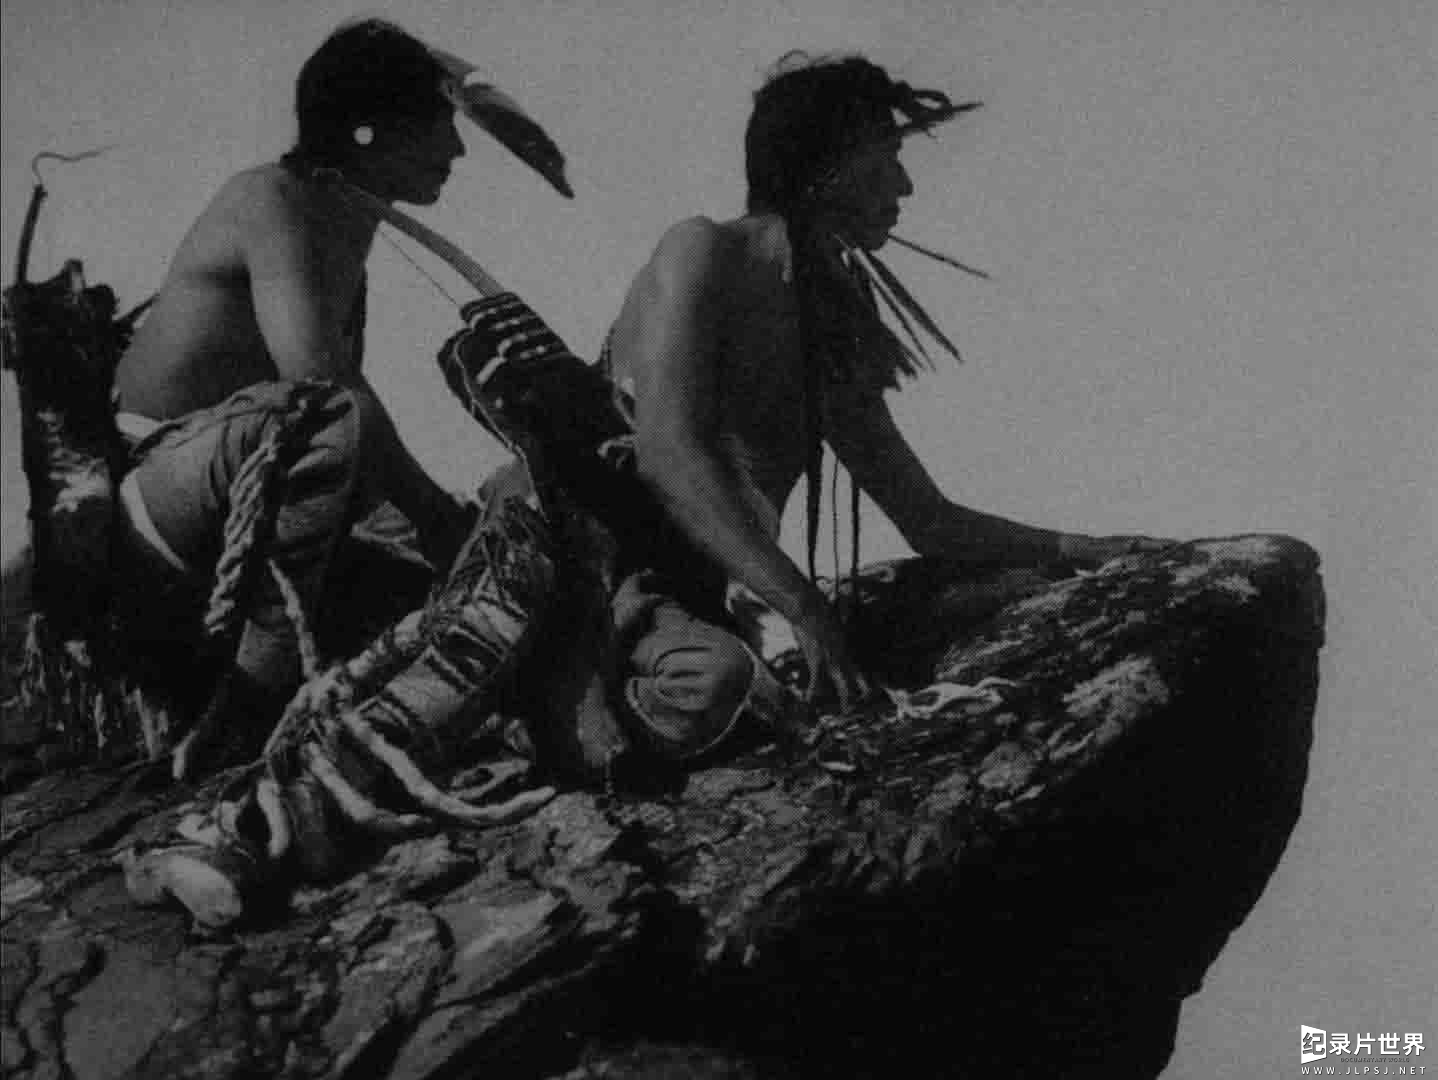 匈牙利纪录片《印第安人的故事 An Indian Story 1962》全1集